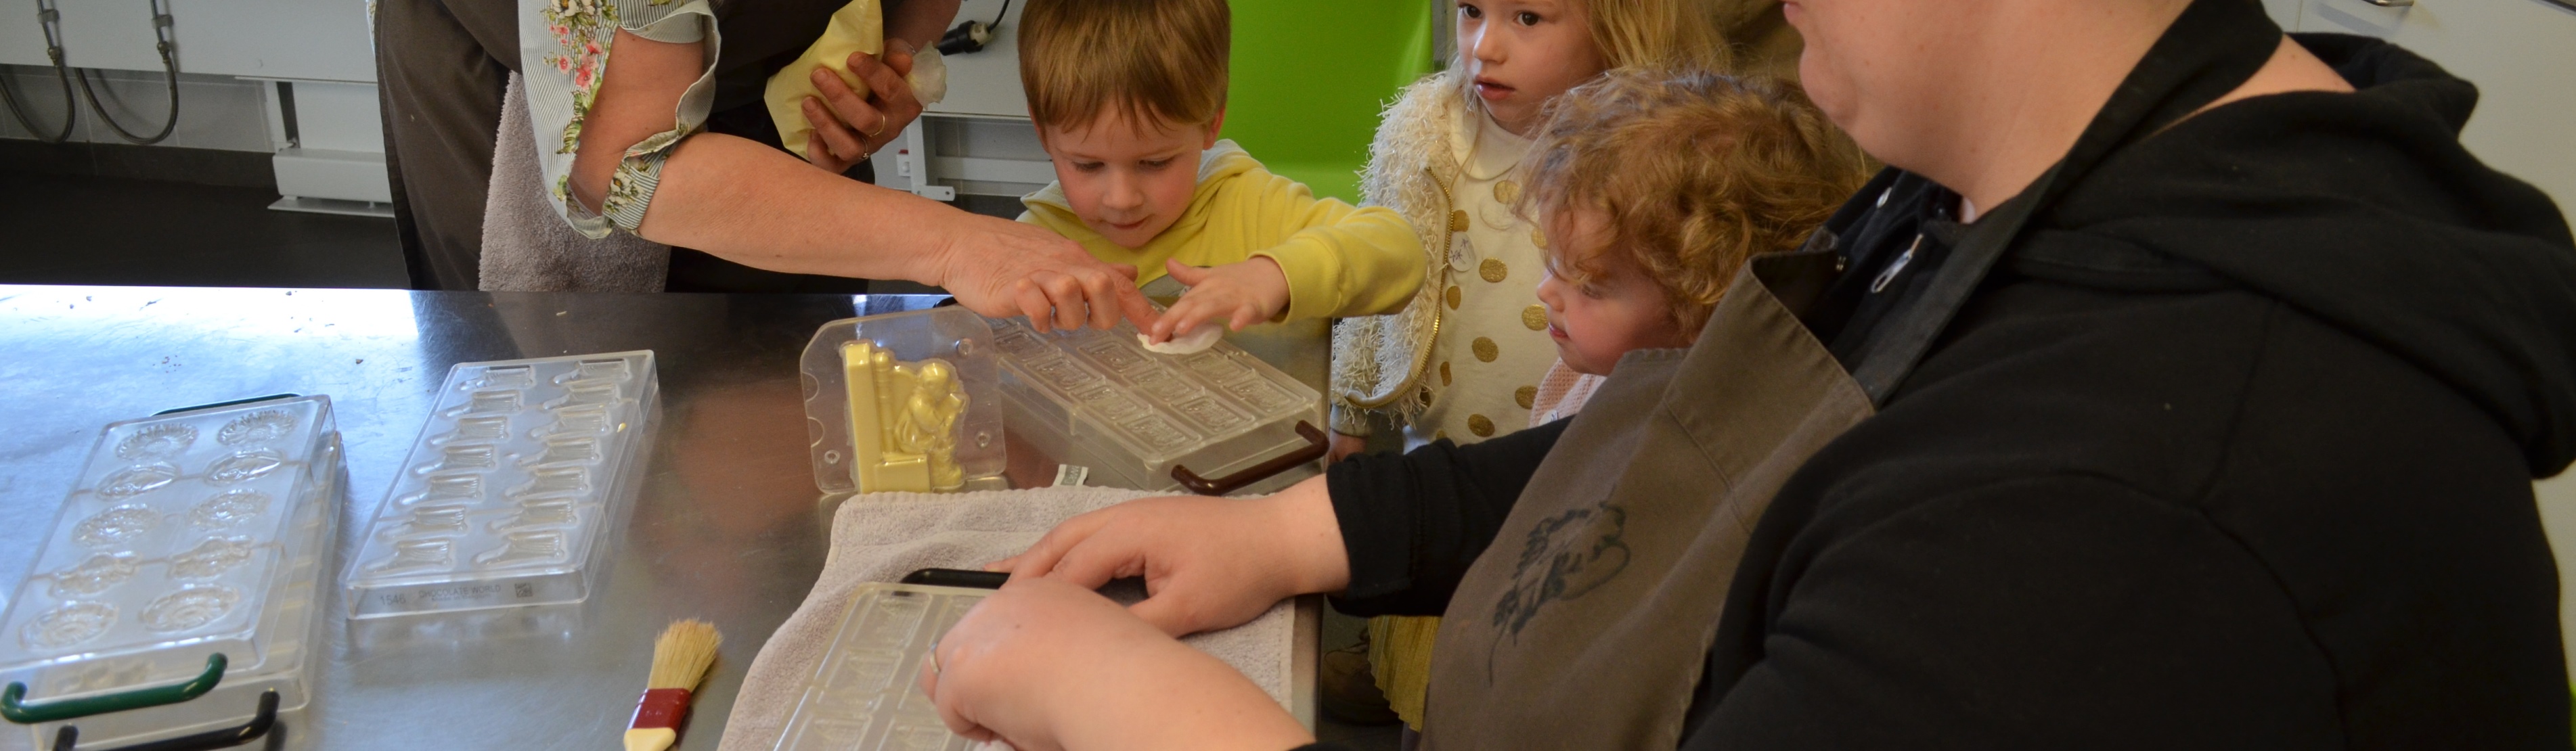 Foto van kinderen die chocolade maken